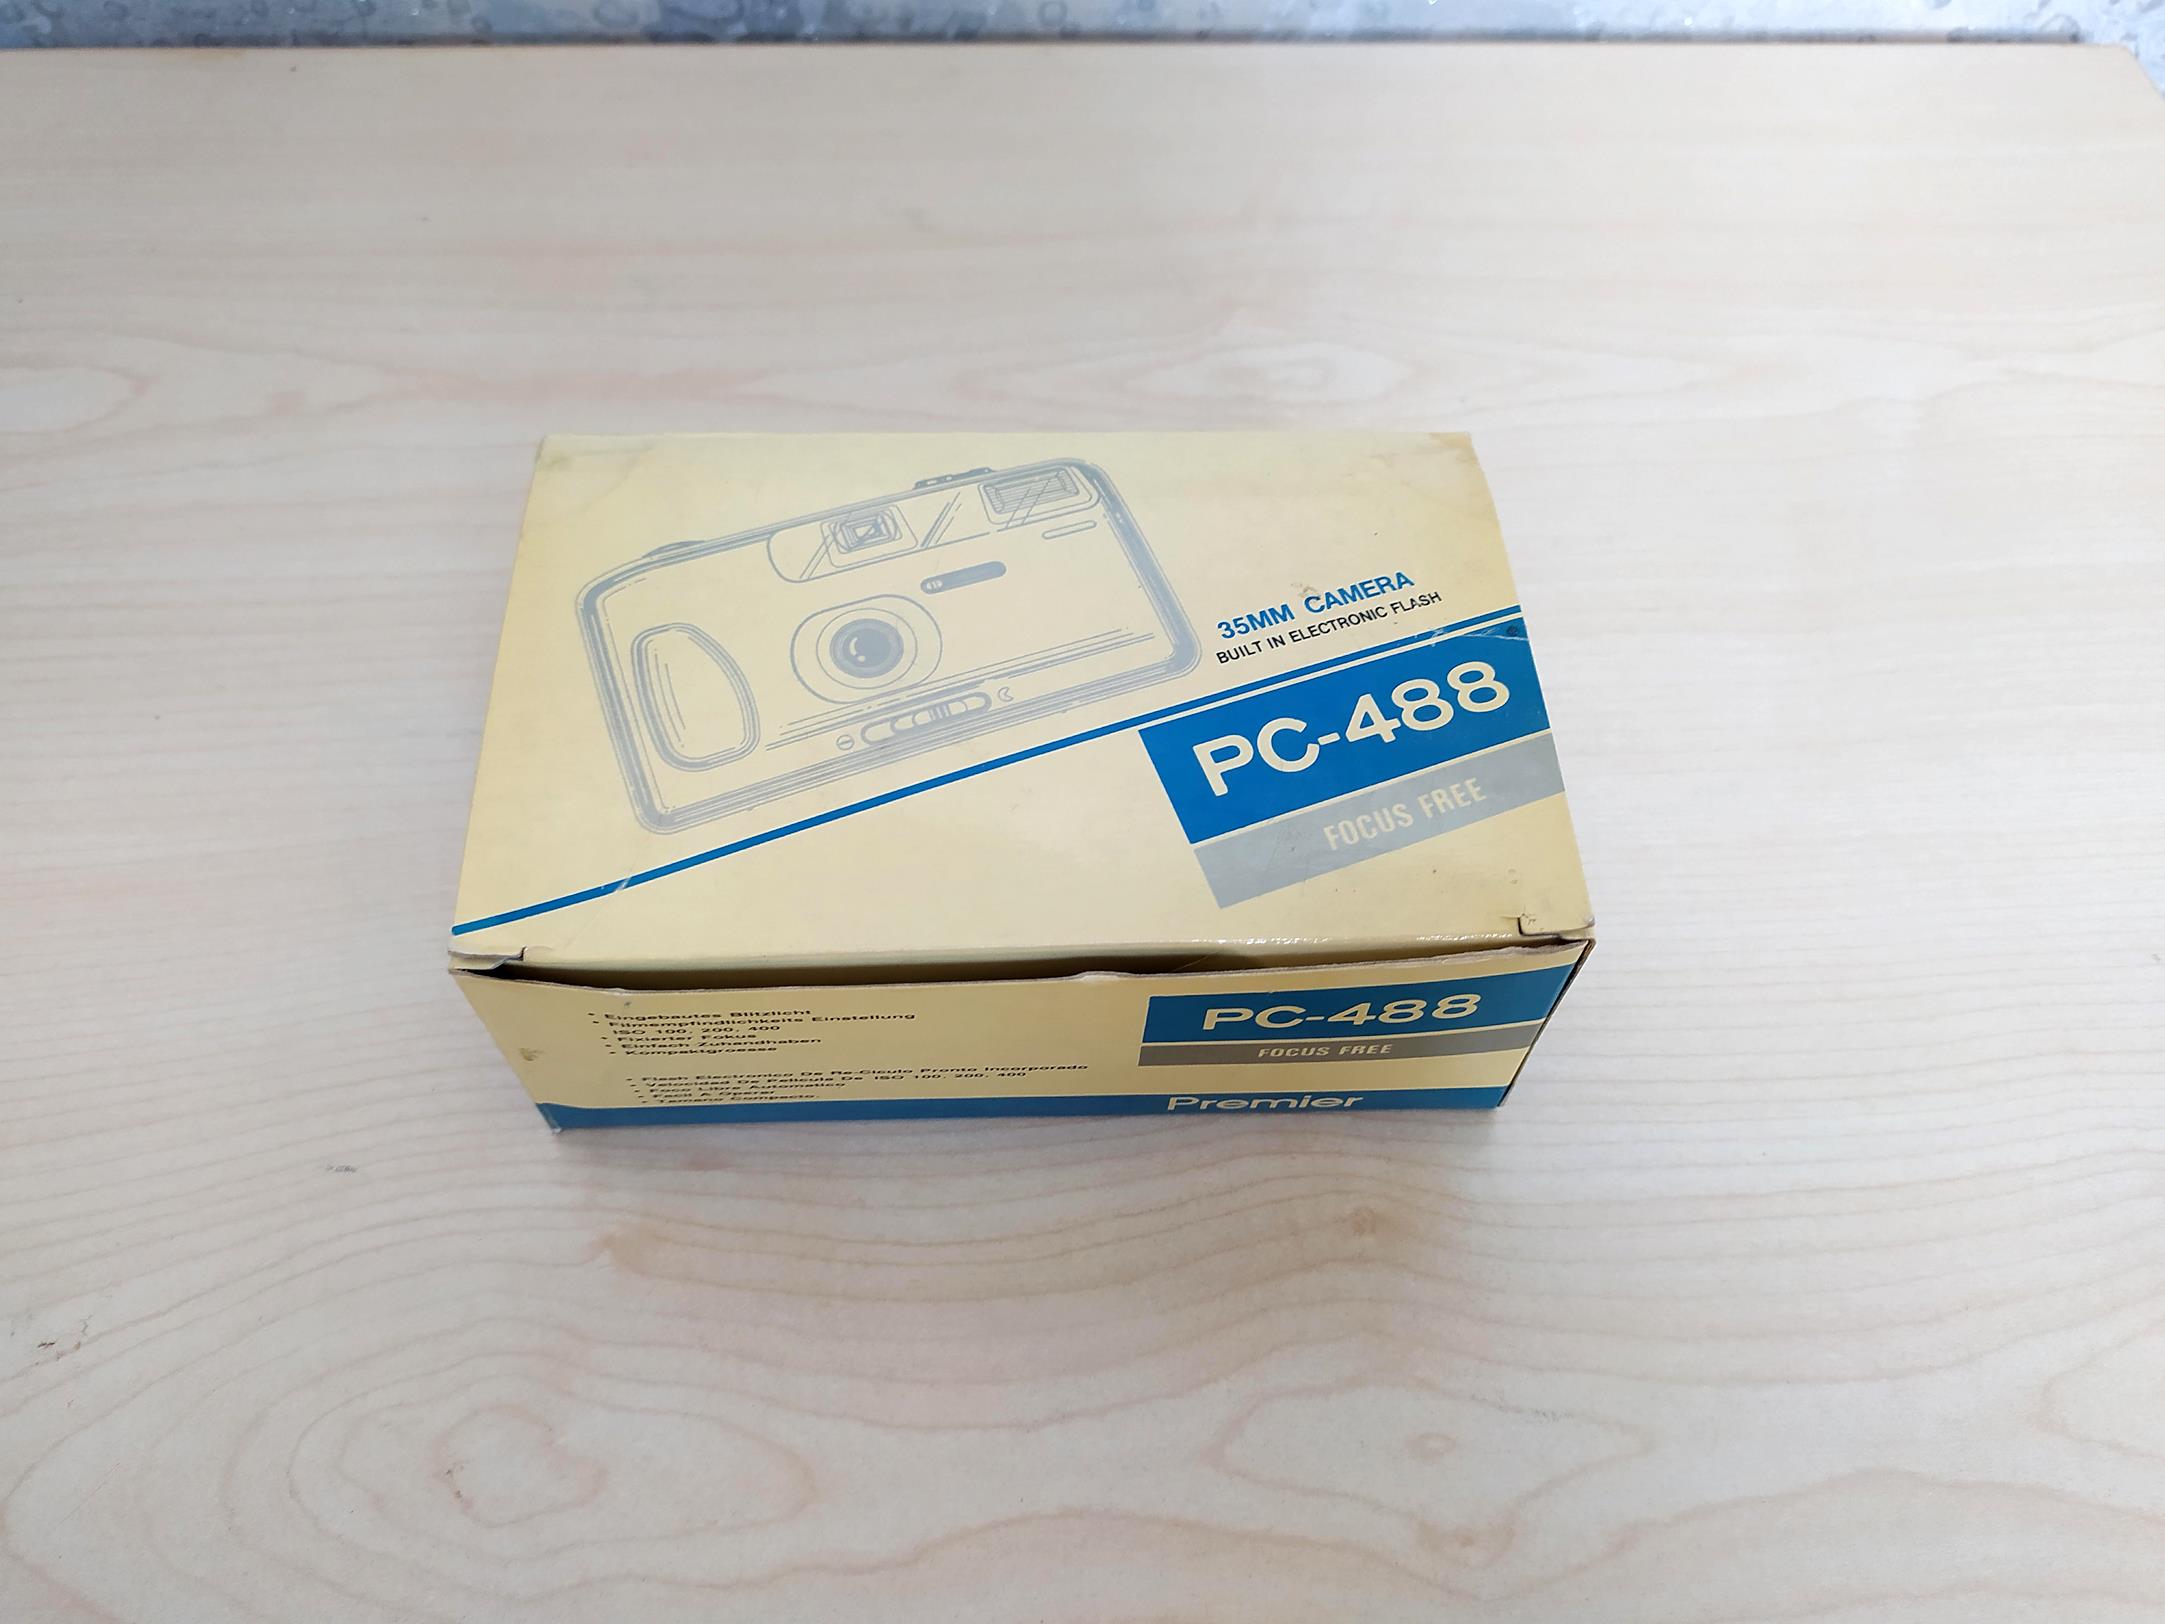 دوربین قدیمی PREMIER PC-488 با جعبه